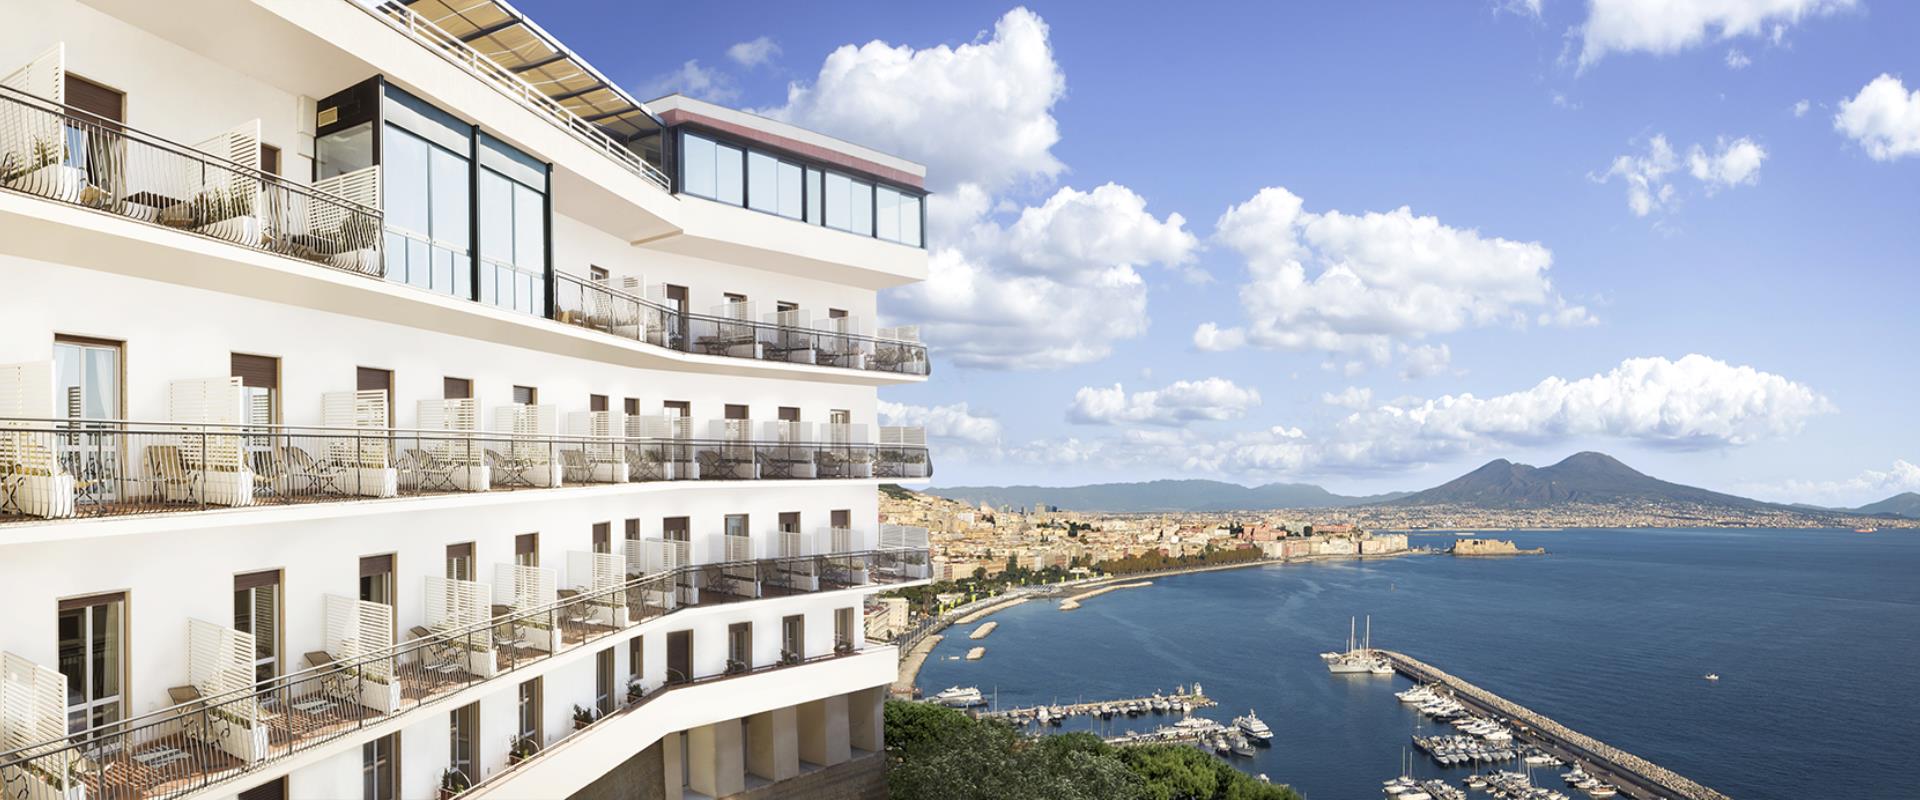 BW Signature Collection Hotel Paradiso Naples-hôtel 4 étoiles à Posillipo avec une vue incroyable sur la baie de Naples